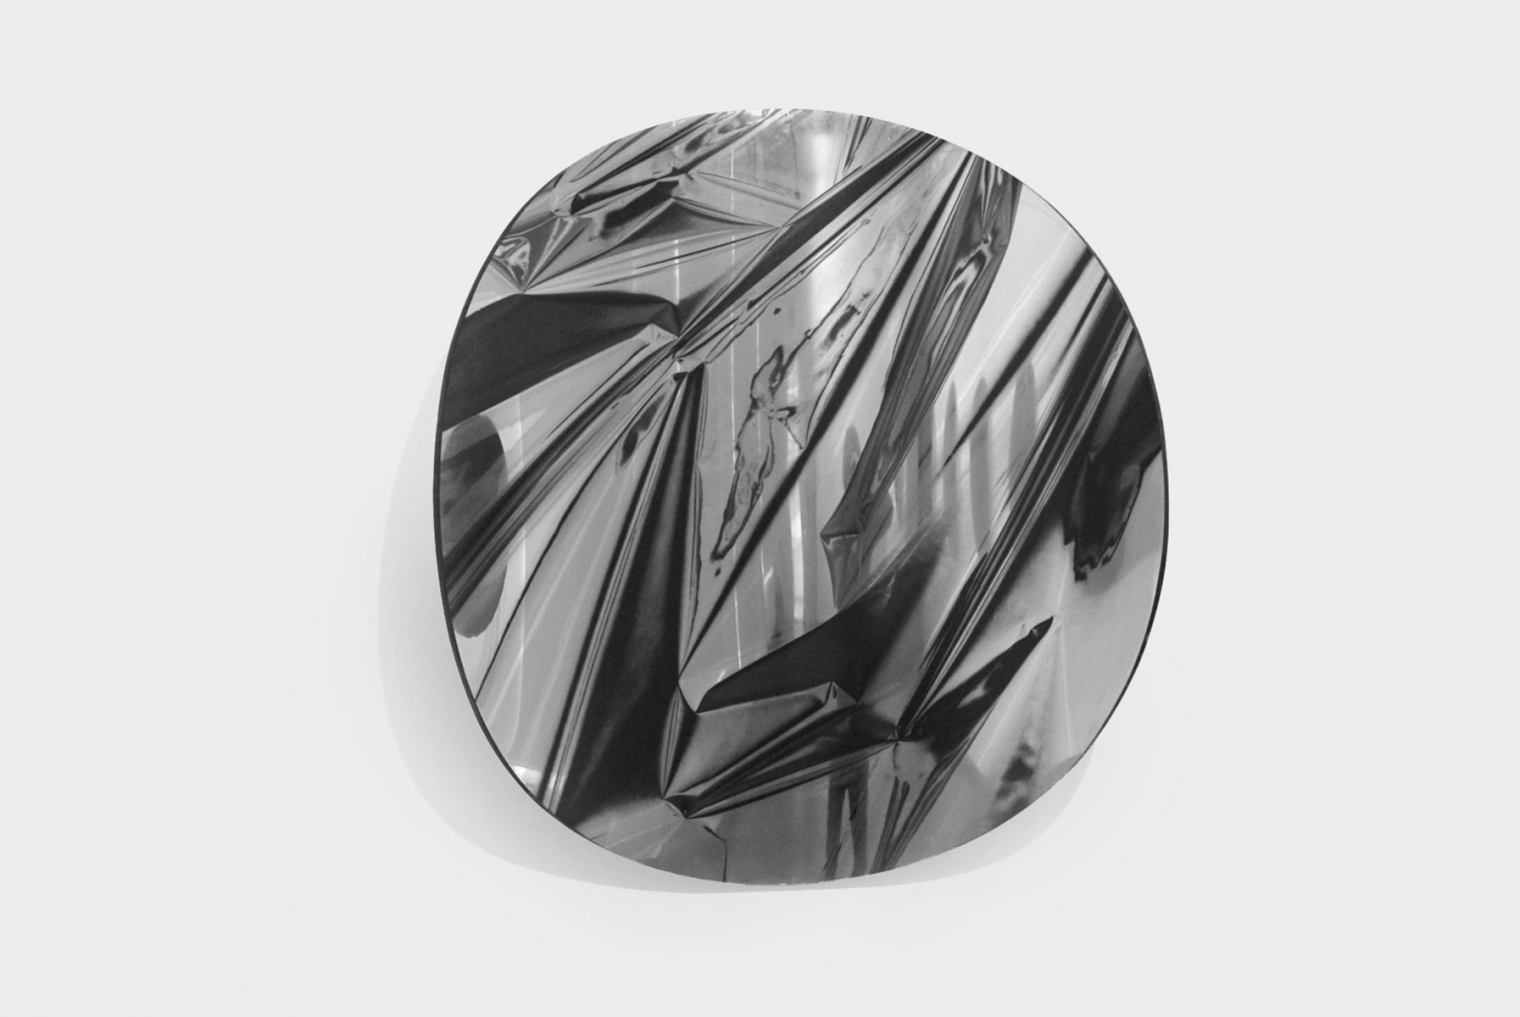 MIRROR/15  Material: wood, plexsi-glass, UV print; Dimension: 100 x 85 x 15 cm; Date: 2013-2015